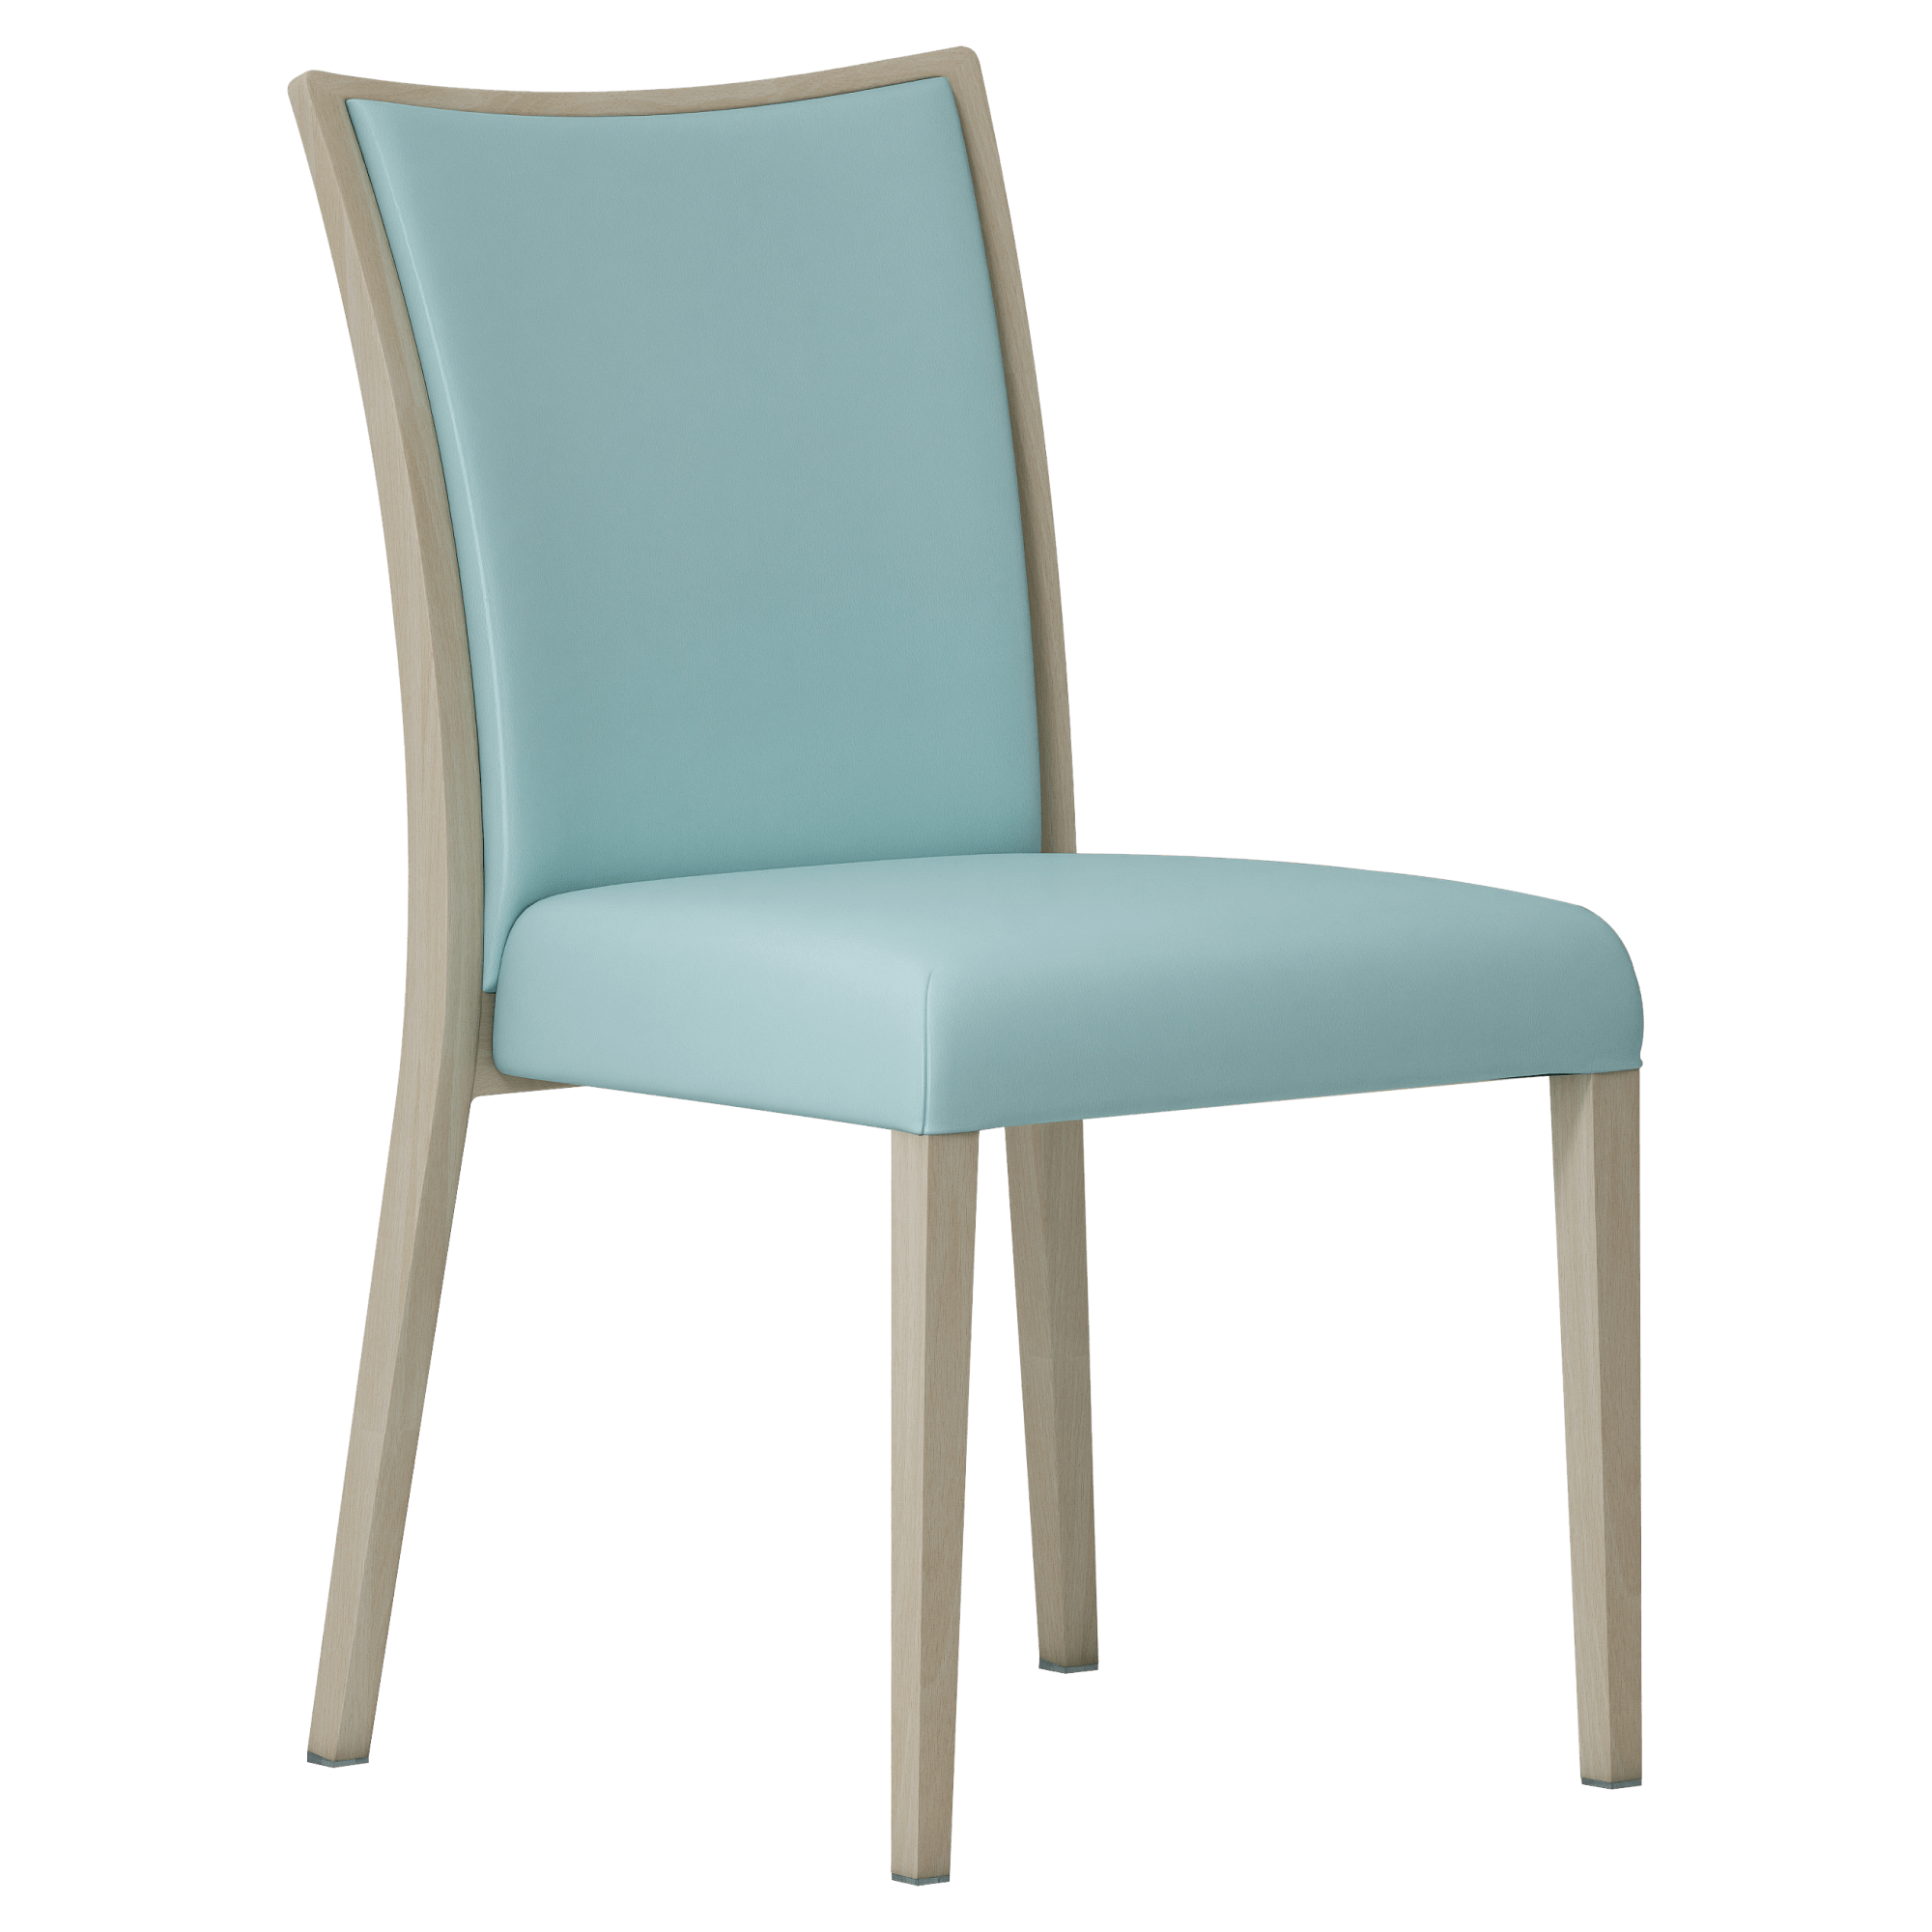 Henderson Fully Upholstered Aluminum Chair